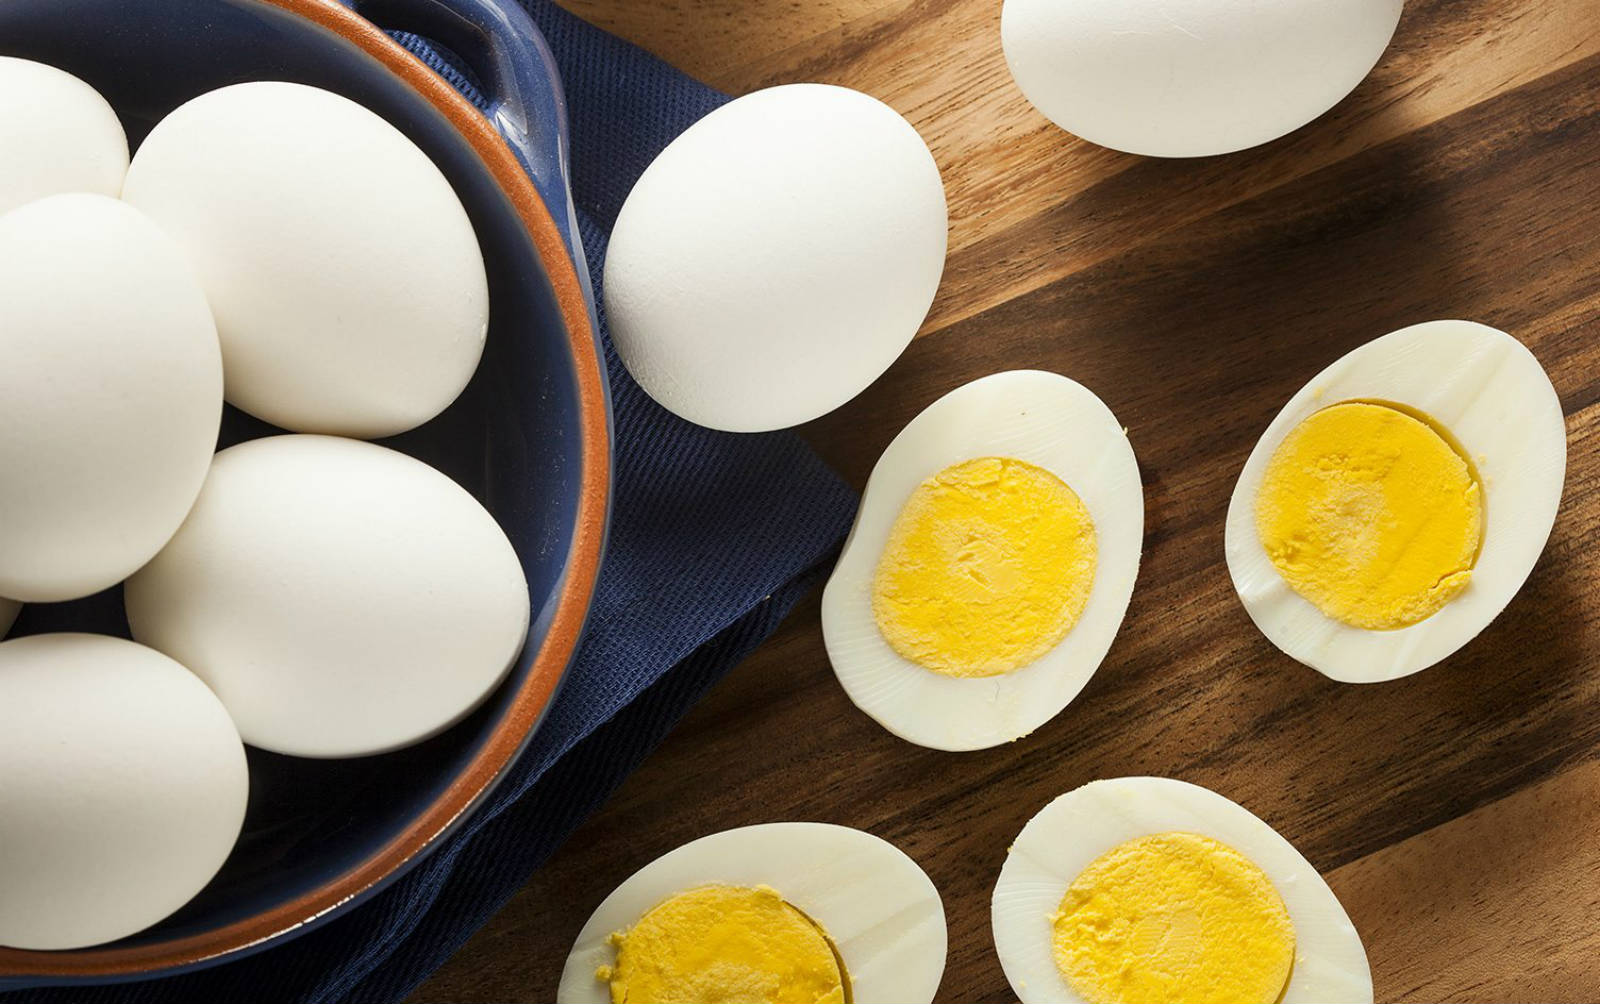 จำนวนไข่ที่ปลอดภัยสำหรับผู้ป่วยคอเลสเตอรอลที่บริโภคทุกวัน?